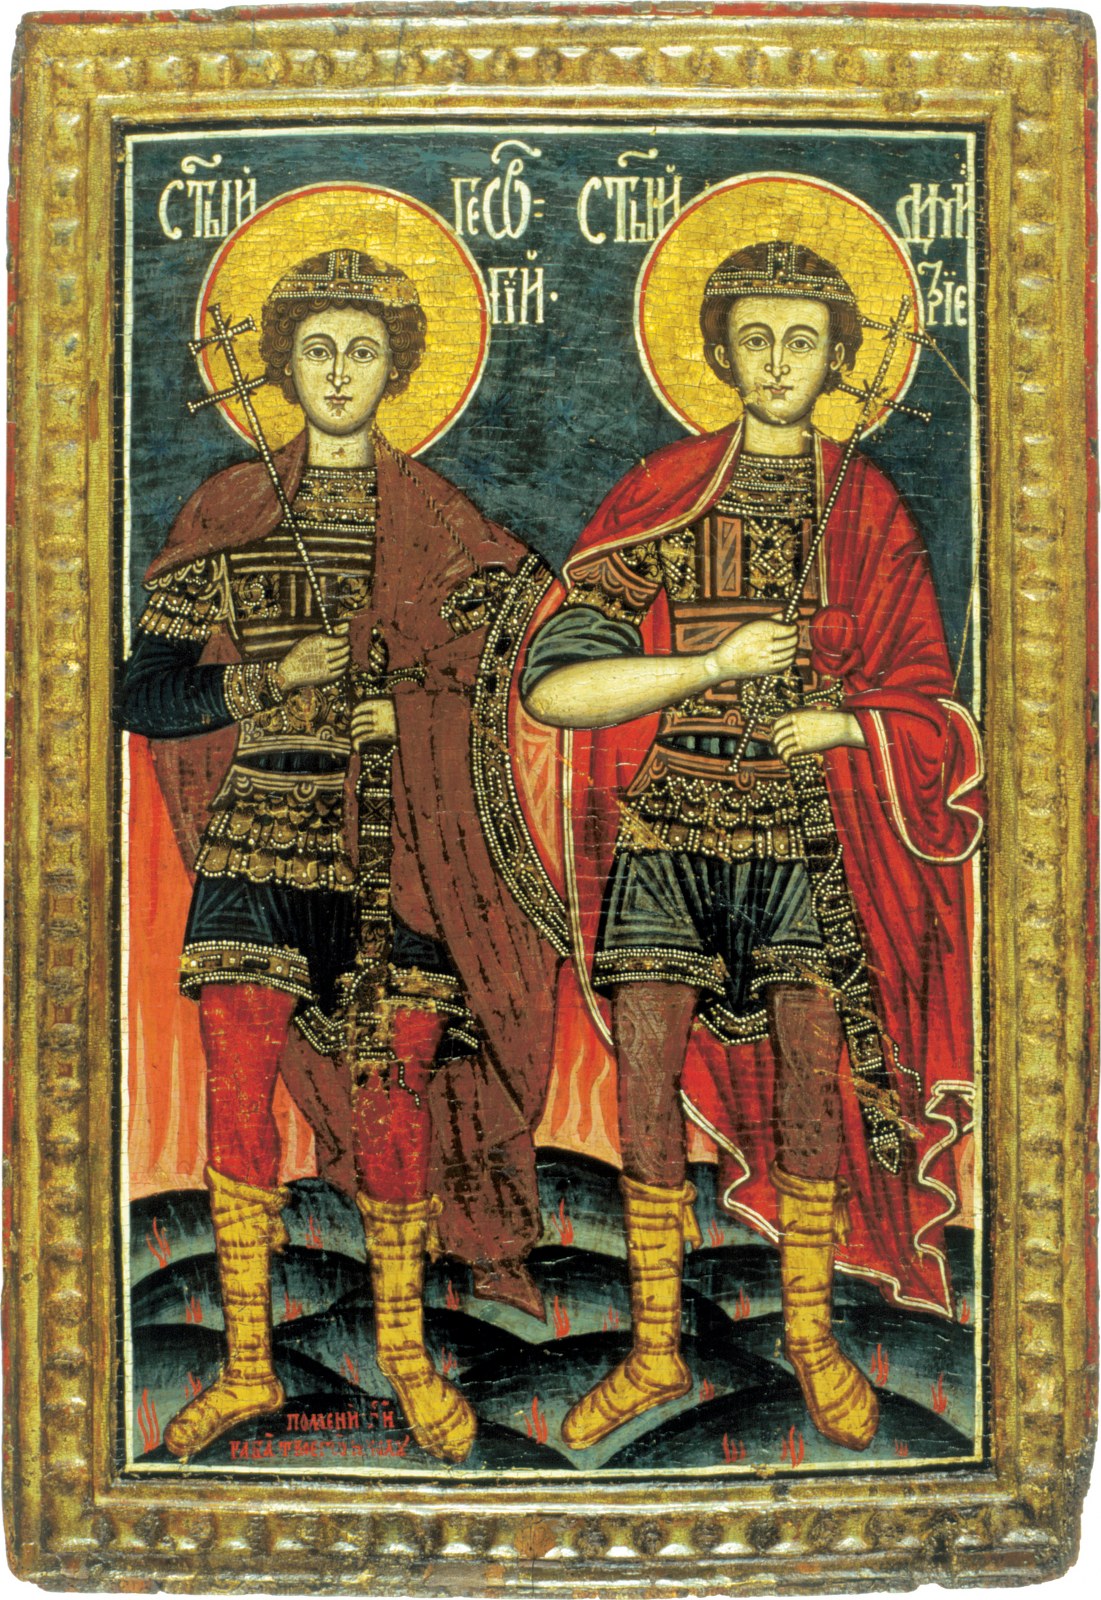 Nepoznati ikonopisac 18. veka | Sveti Georgije i Dimitrije